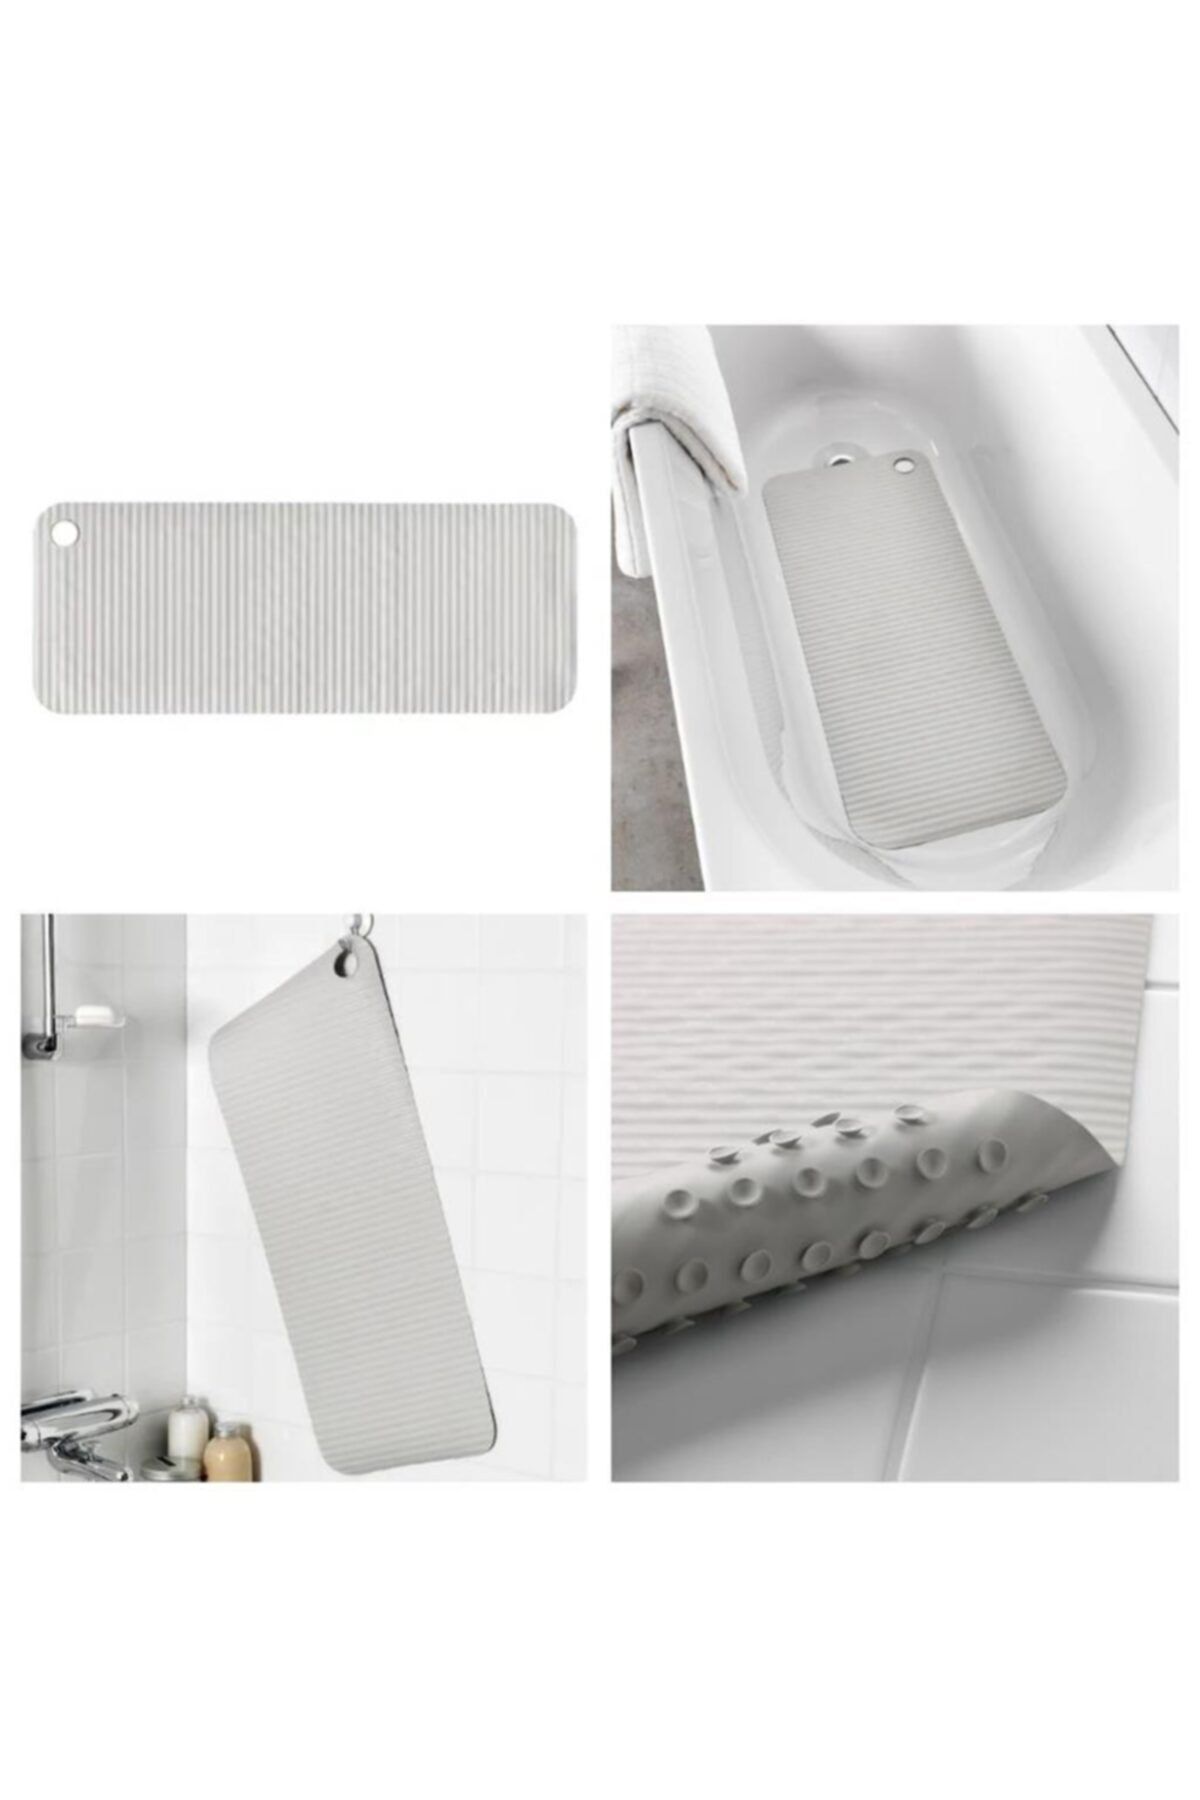 IKEA Doppa Banyo Kaydırmaz Duş Küvet Paspası Açık Gri 33x84 Cm Vantuzlu